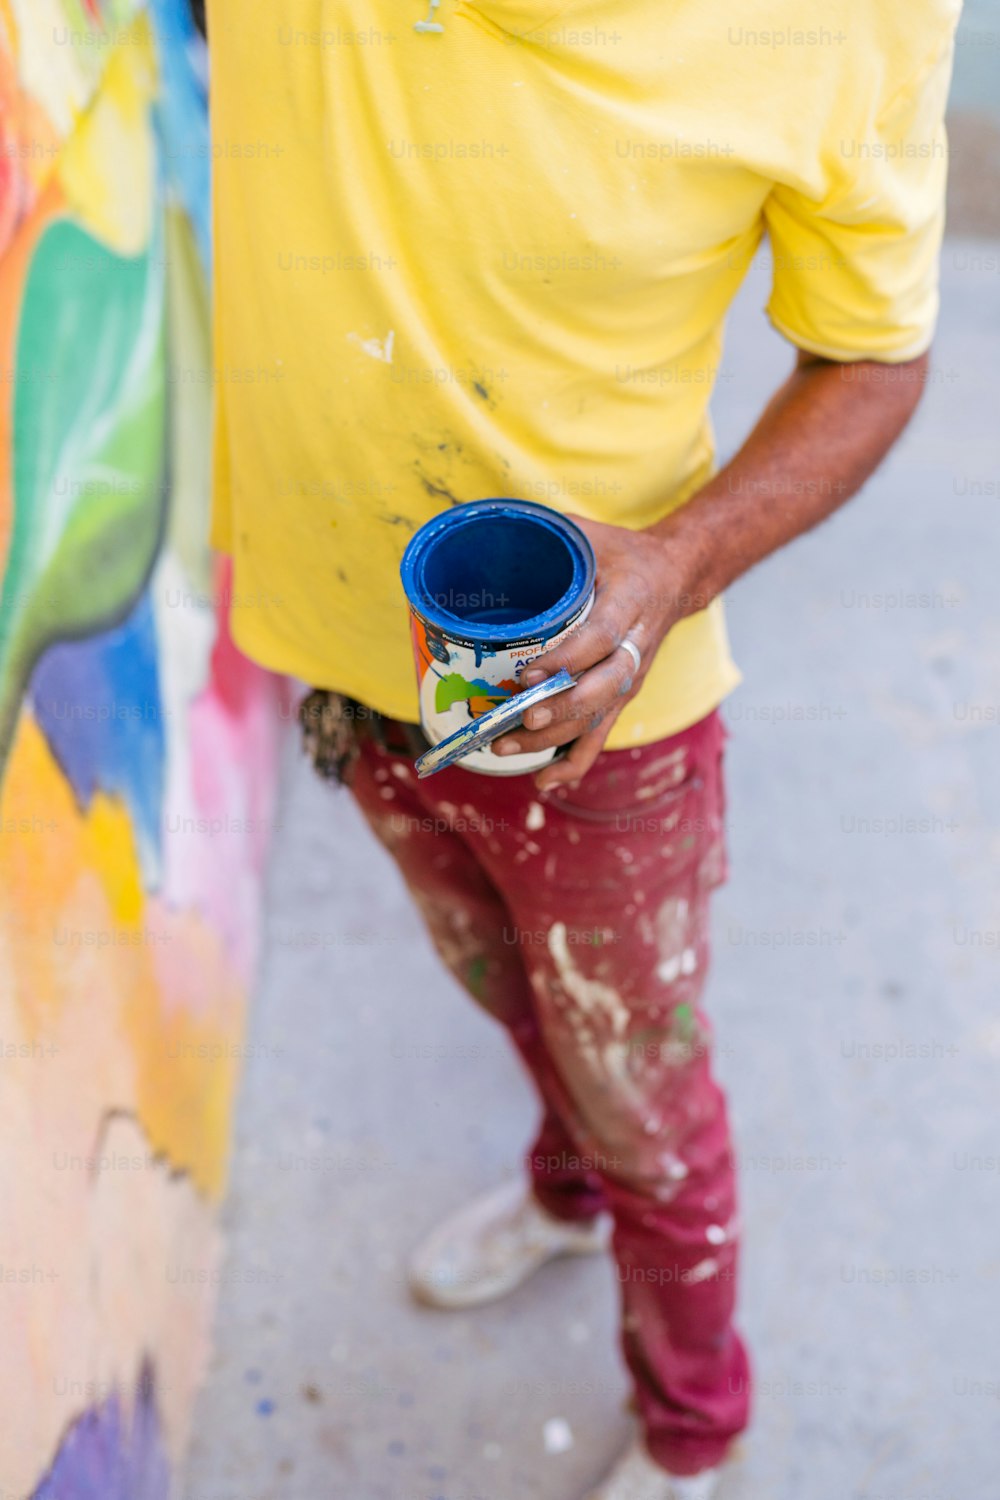 Un uomo con una camicia gialla tiene in mano un barattolo di vernice